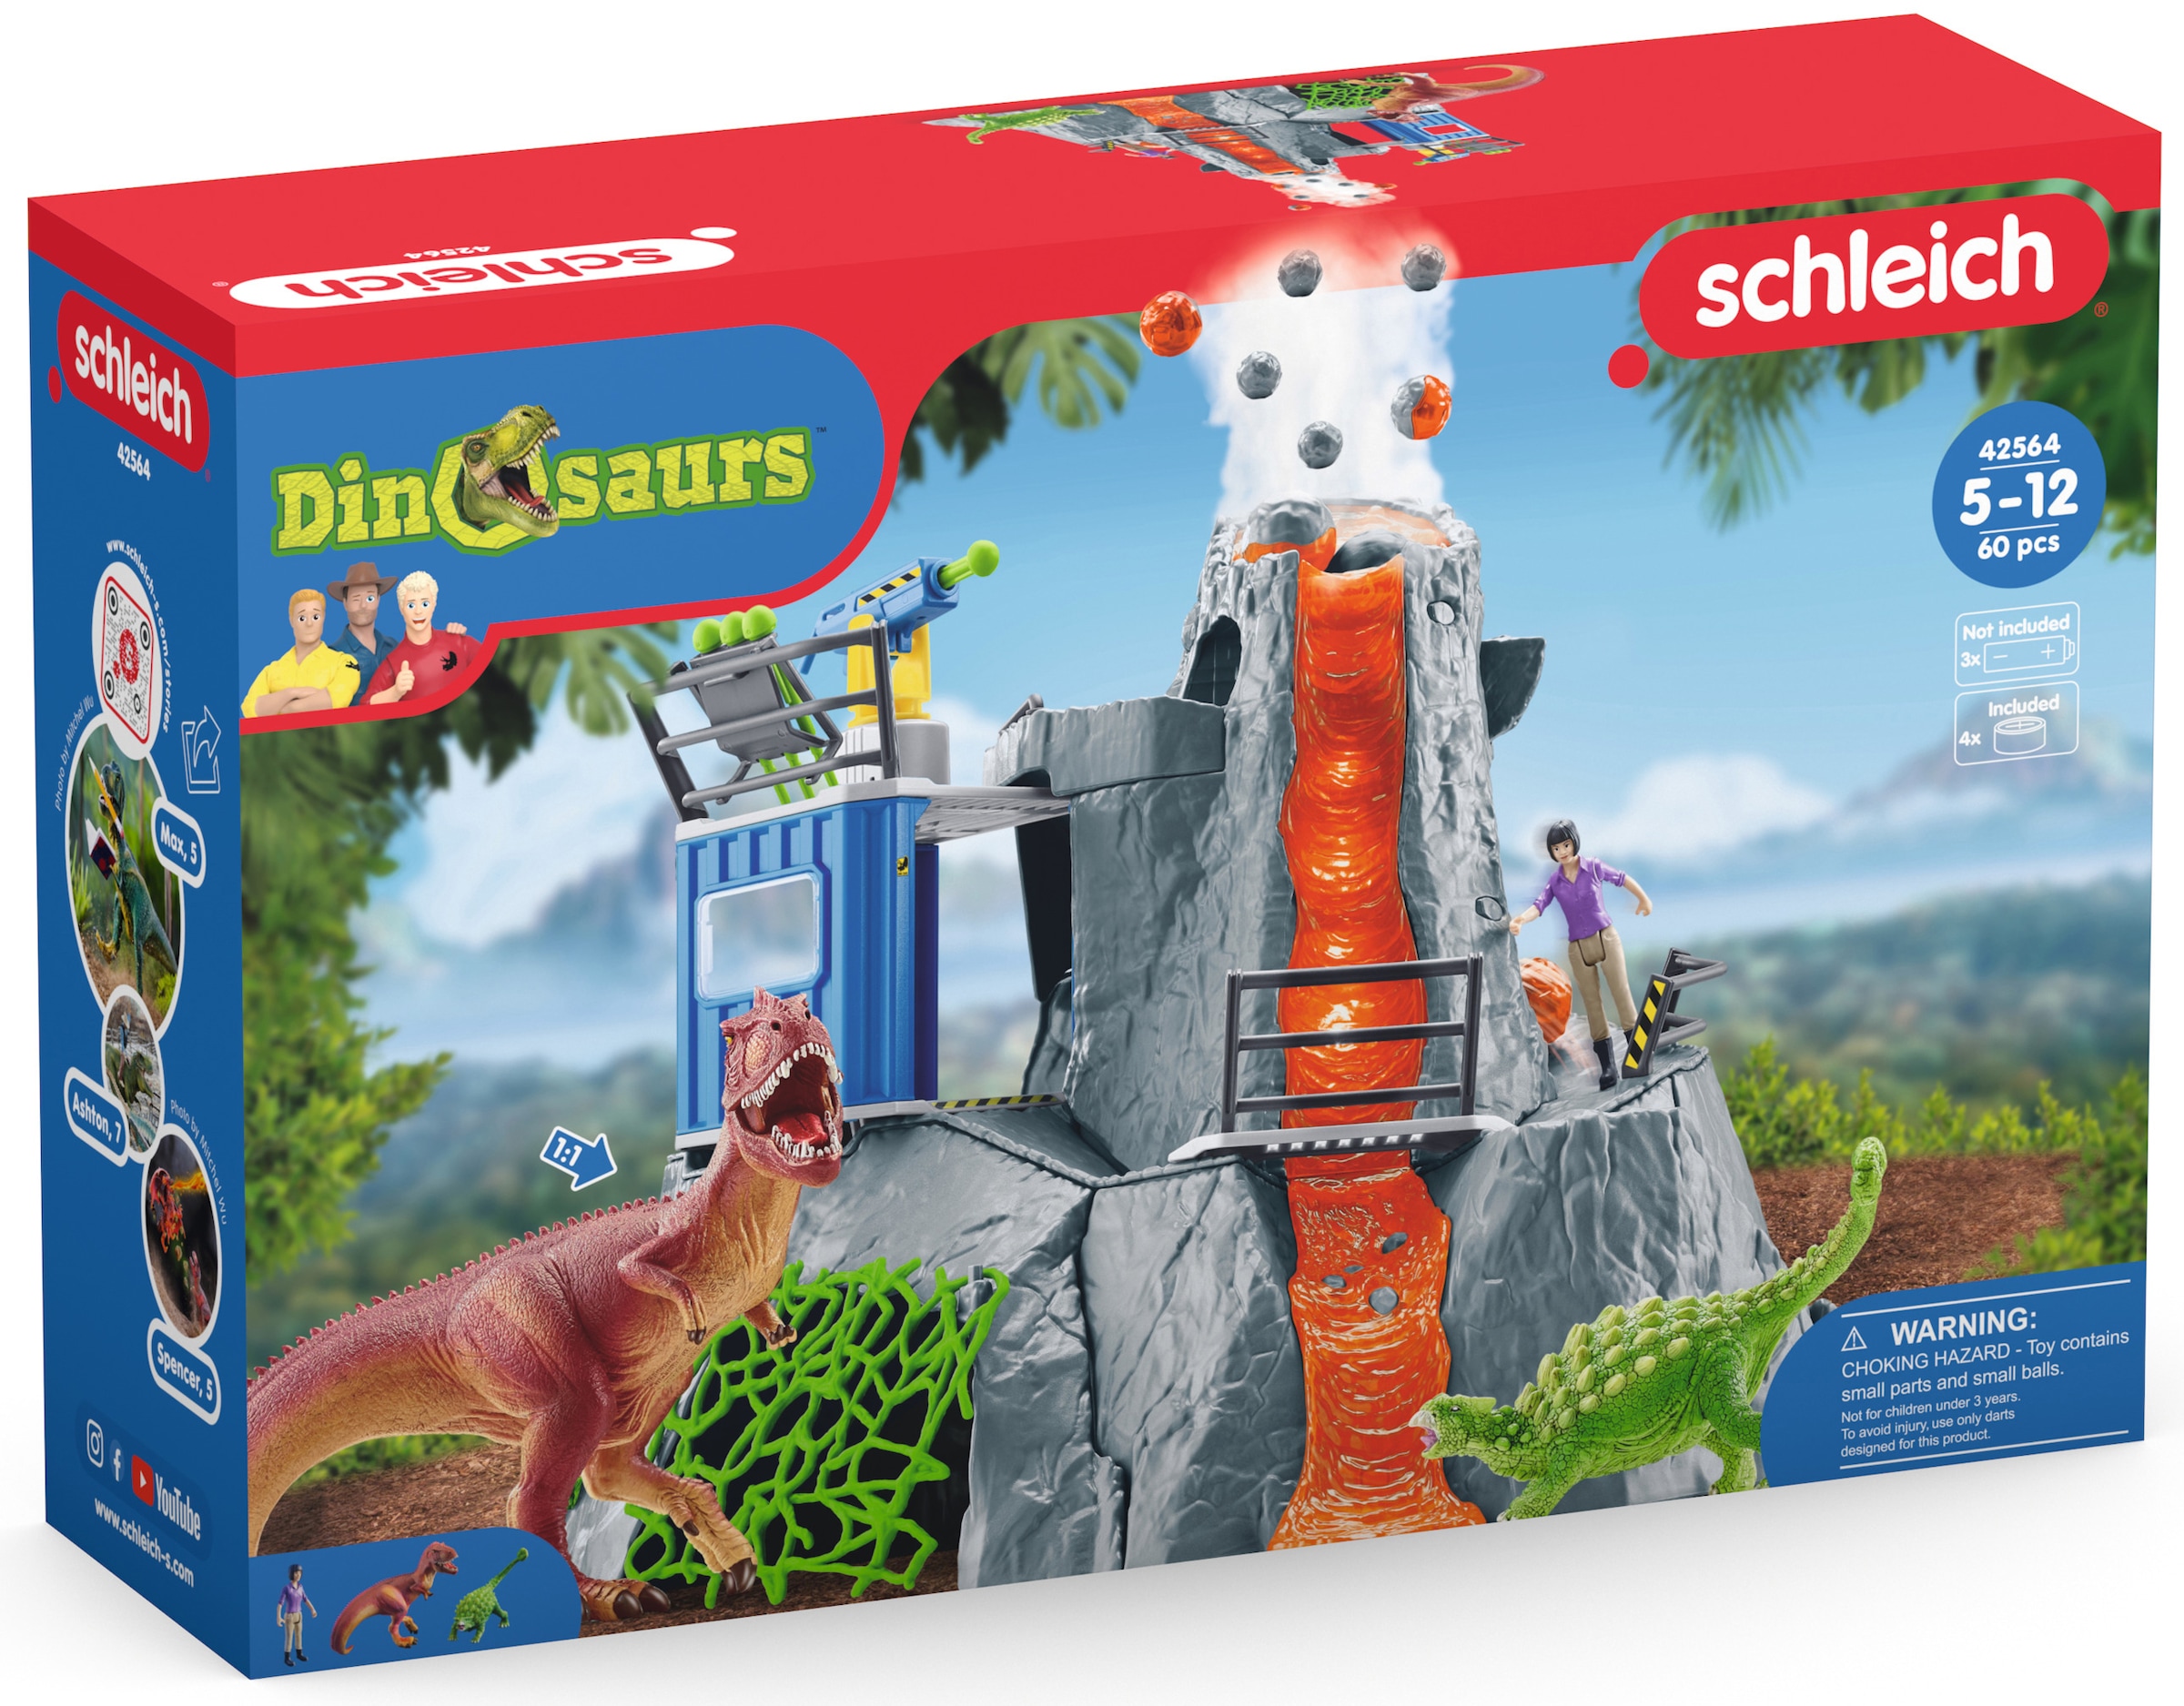 Schleich® Spielwelt »DINOSAURS, Große Vulkan-Expedition (42564)«